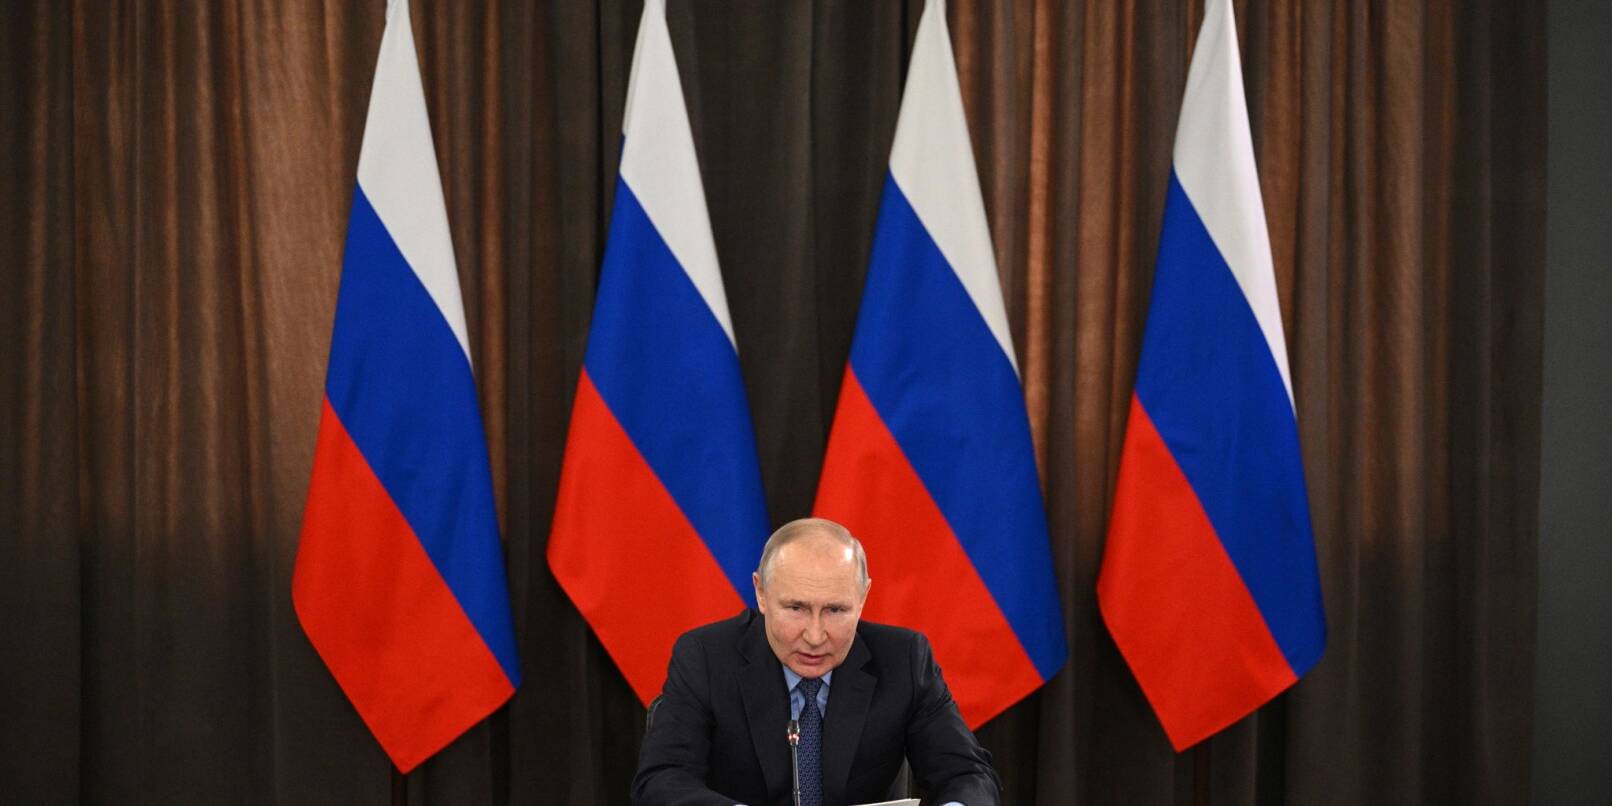 Kremlchef Wladimir Putin leitet eine Sitzung zur Entwicklung der russischen Industrie unter dem Druck der Sanktionen.